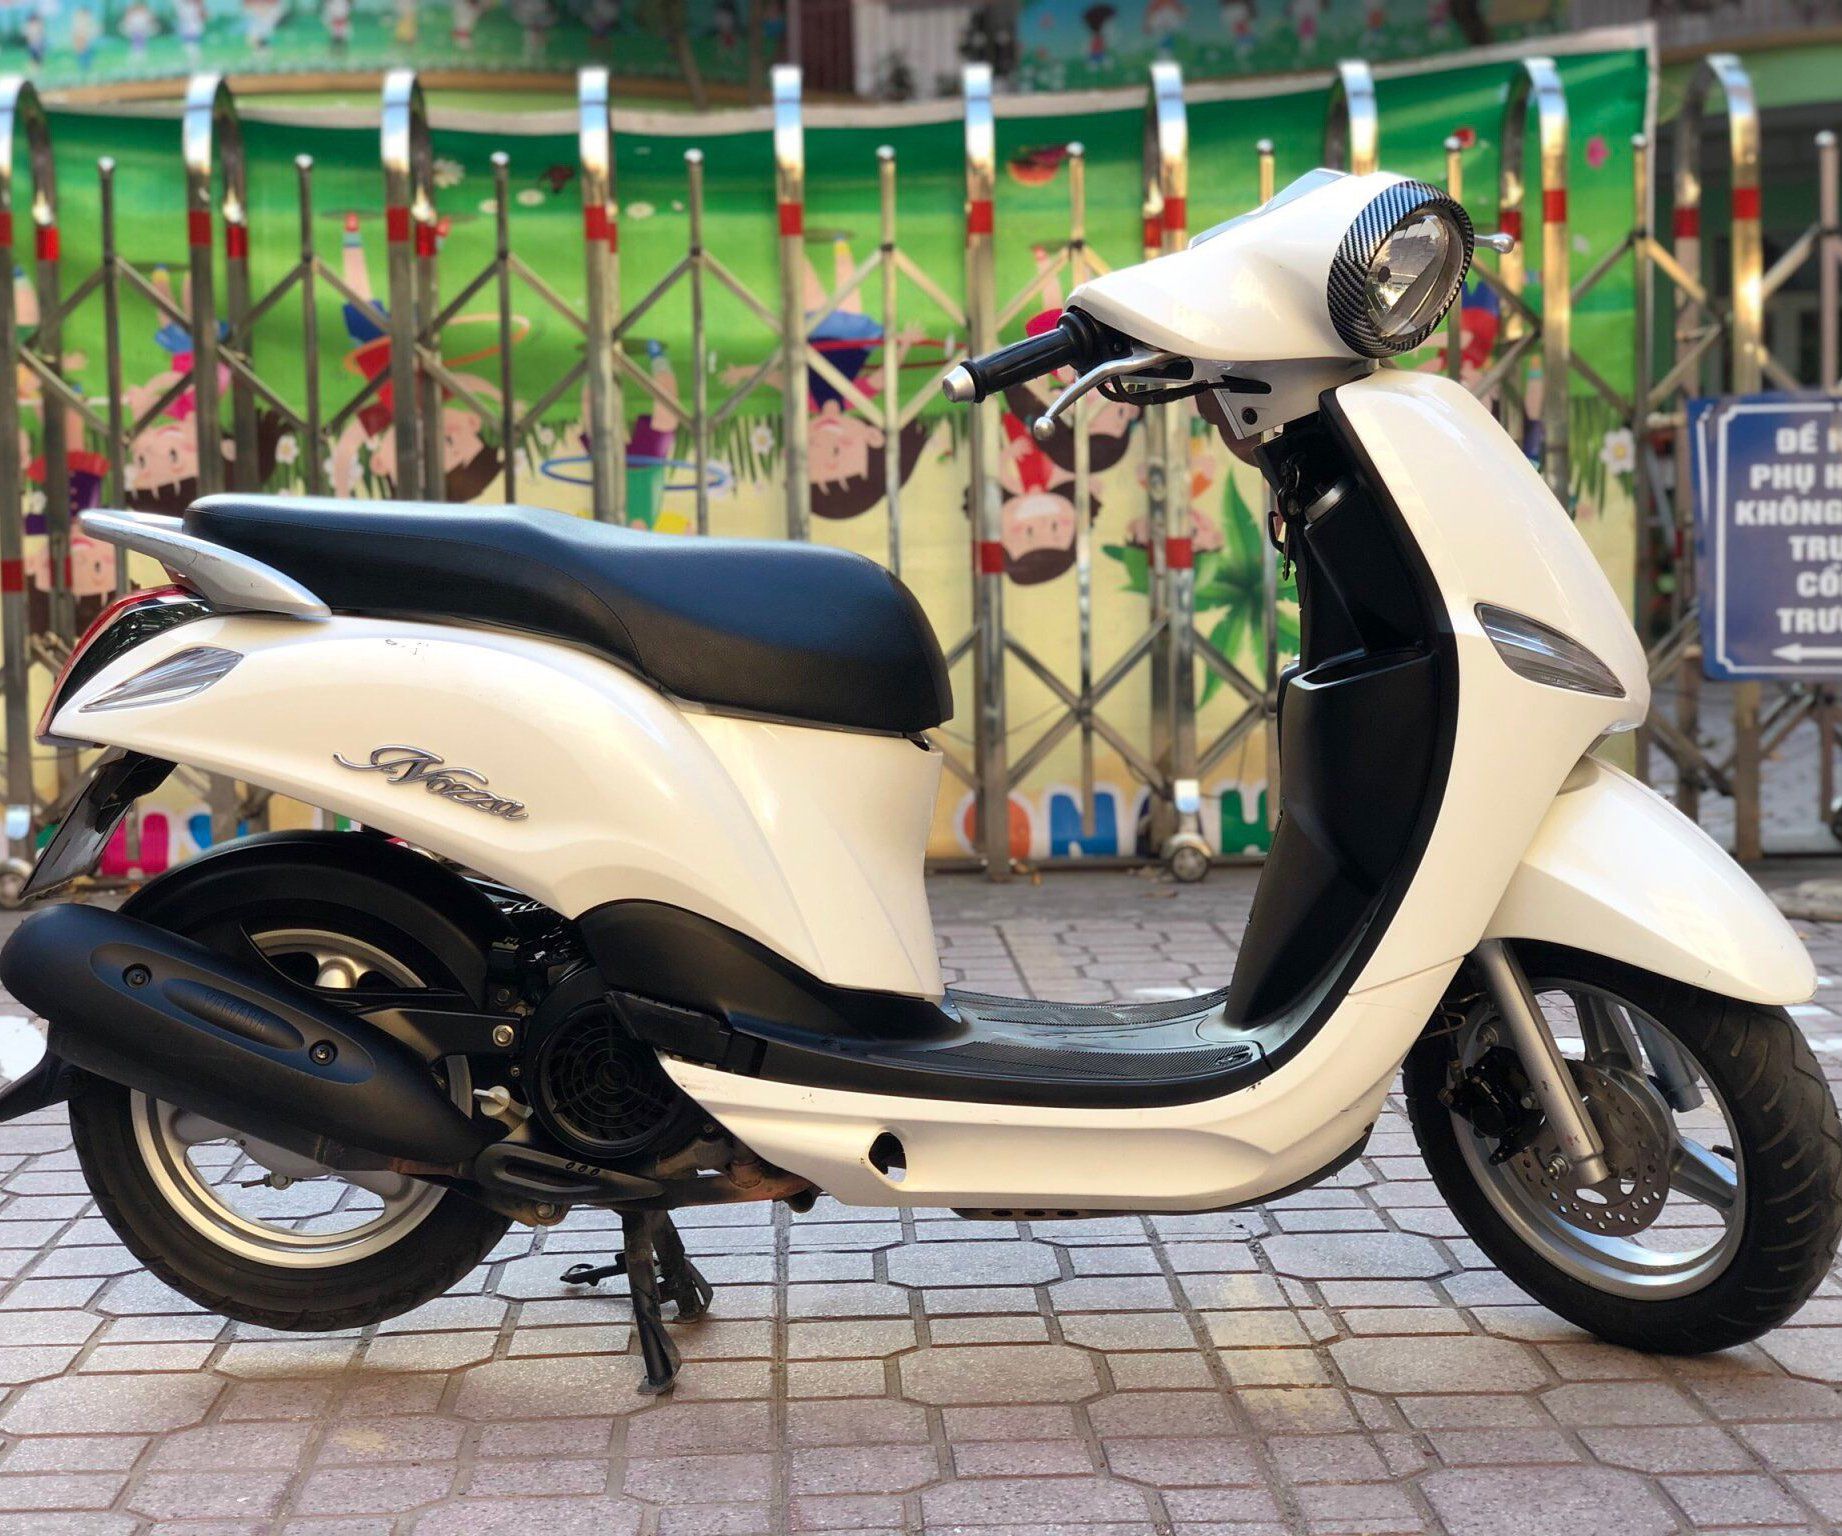 Yamaha Nozza 110 trắng chính chủ 217 biển 29    Giá 105 triệu   0911925701  Xe Hơi Việt  Chợ Mua Bán Xe Ô Tô Xe Máy Xe Tải Xe Khách  Online